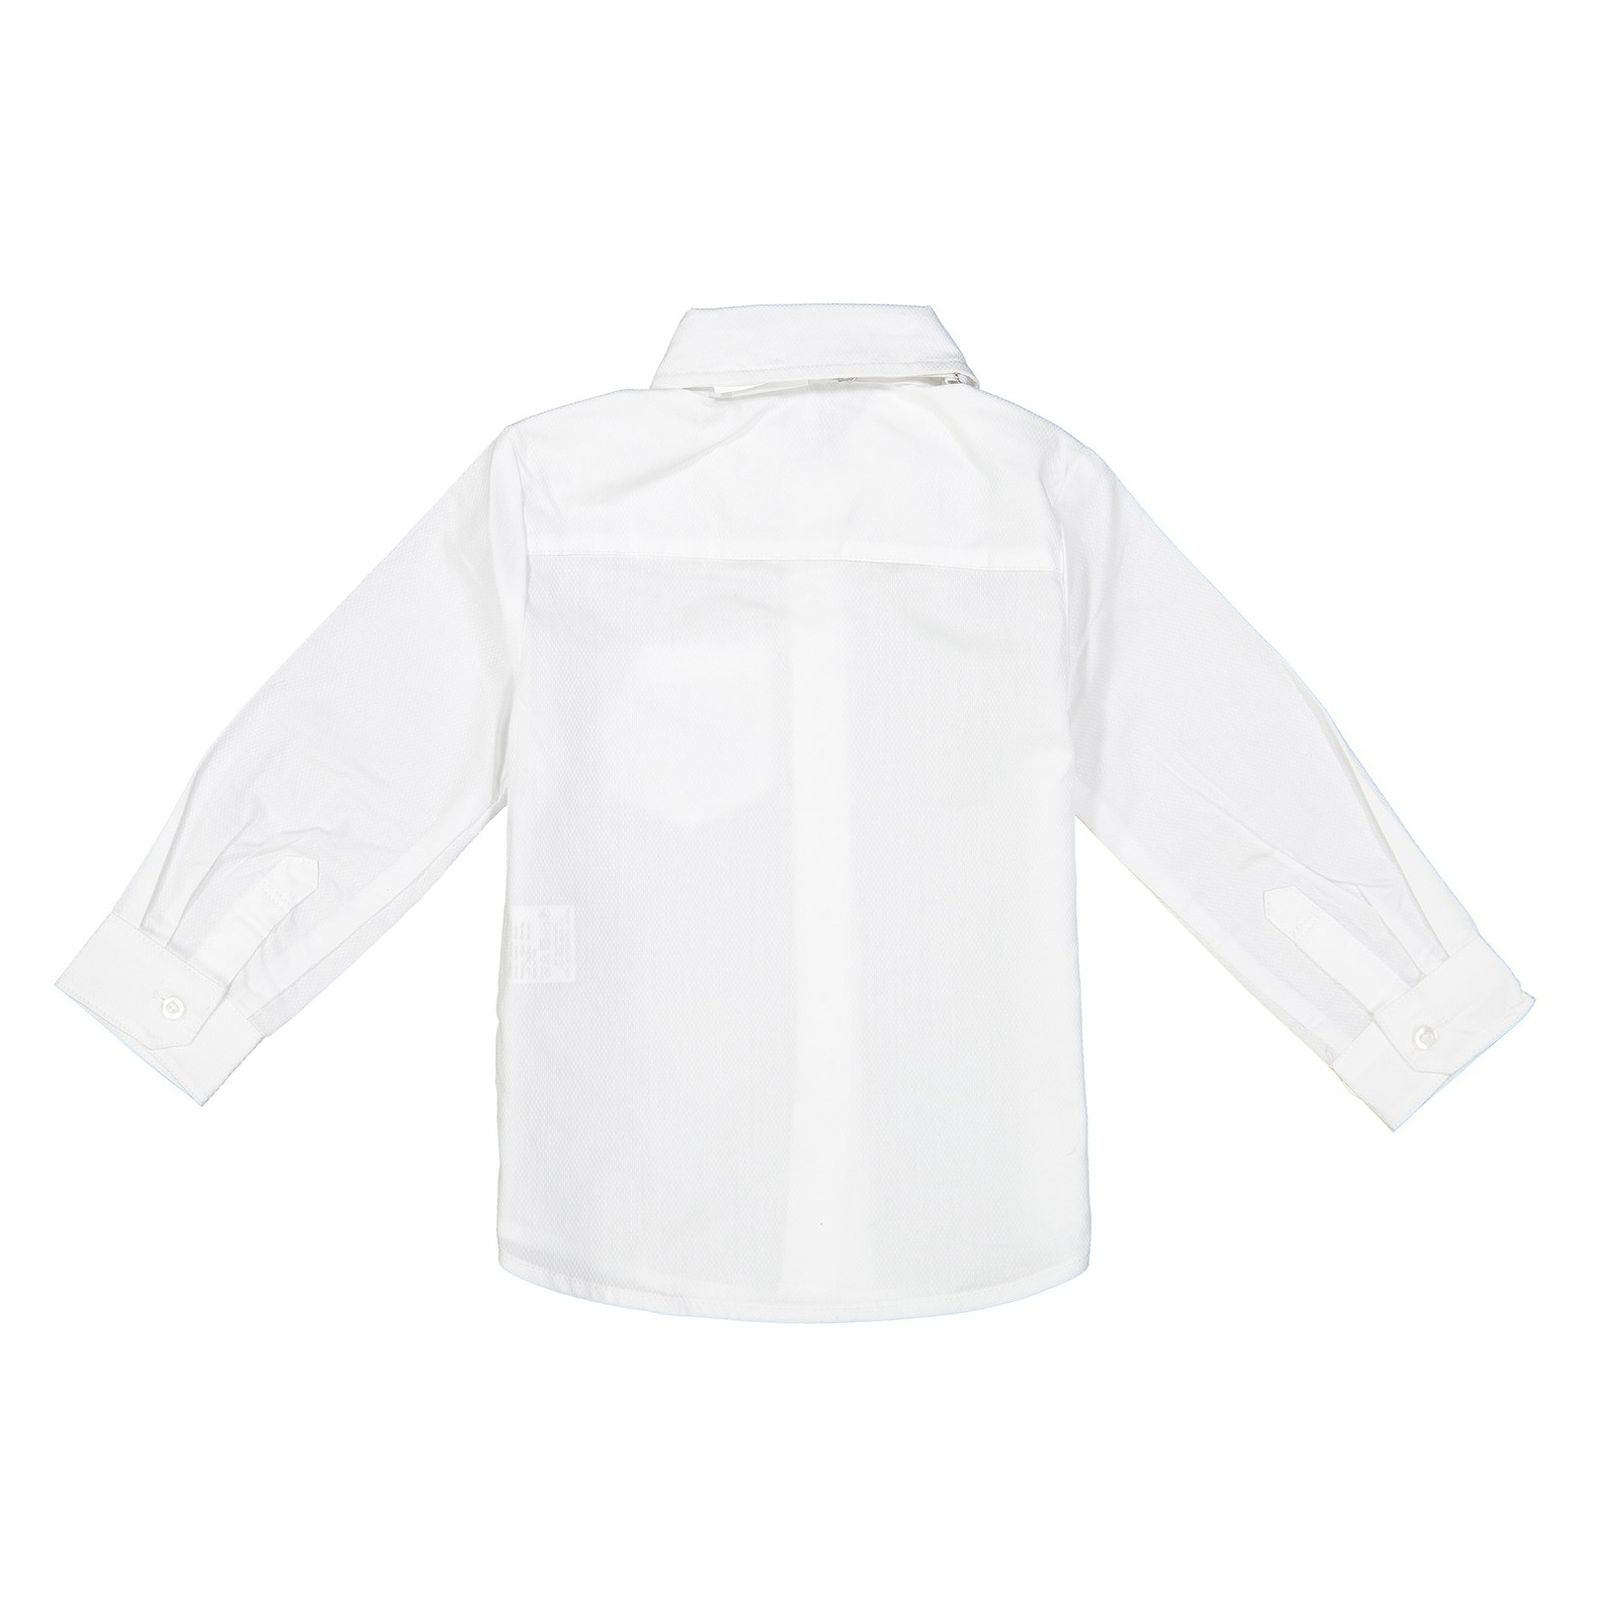 پیراهن نوزادی پسرانه - ایدکس - سفید - 3